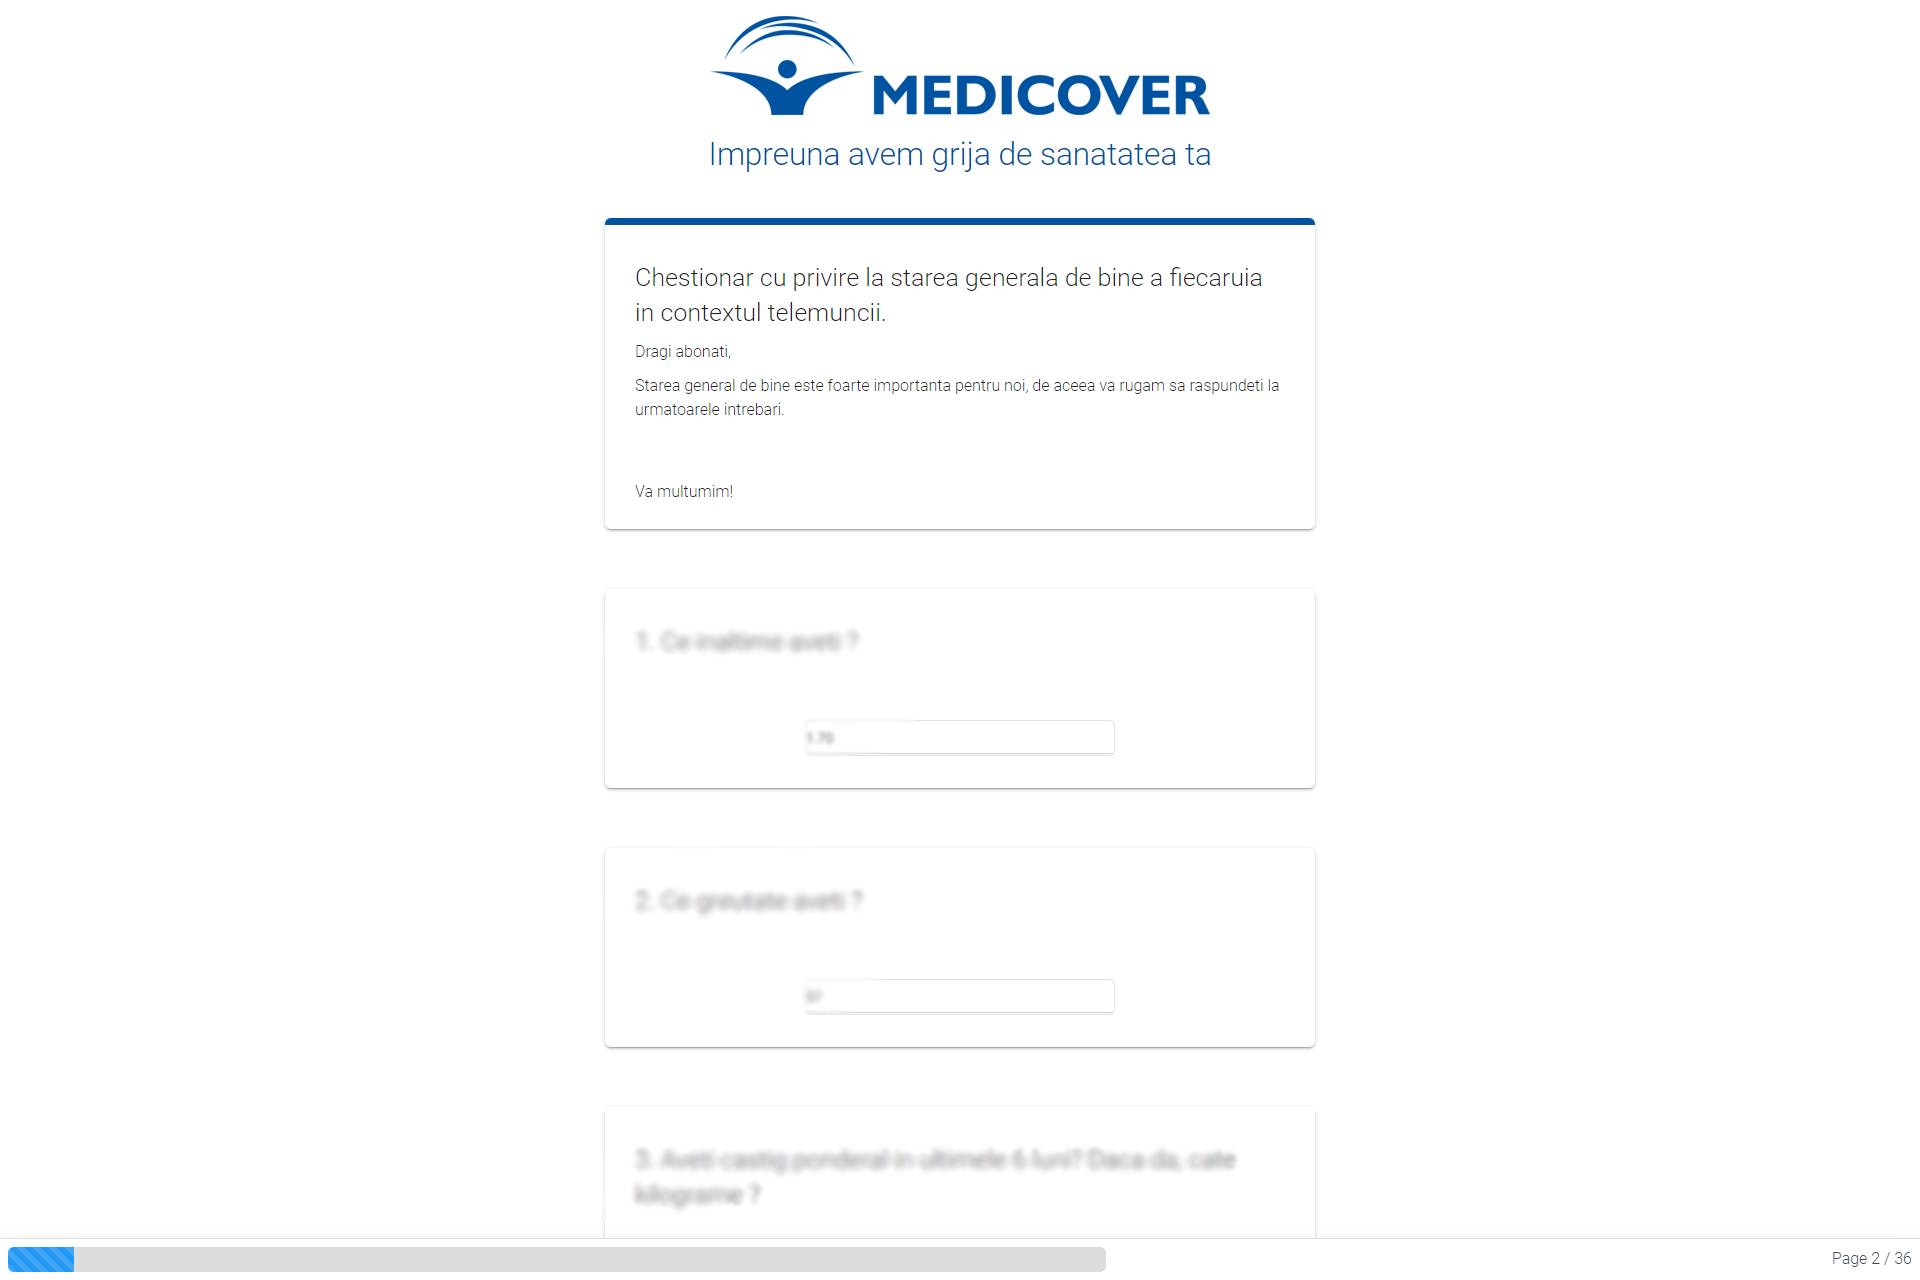 Chestionar feedback - Medicover